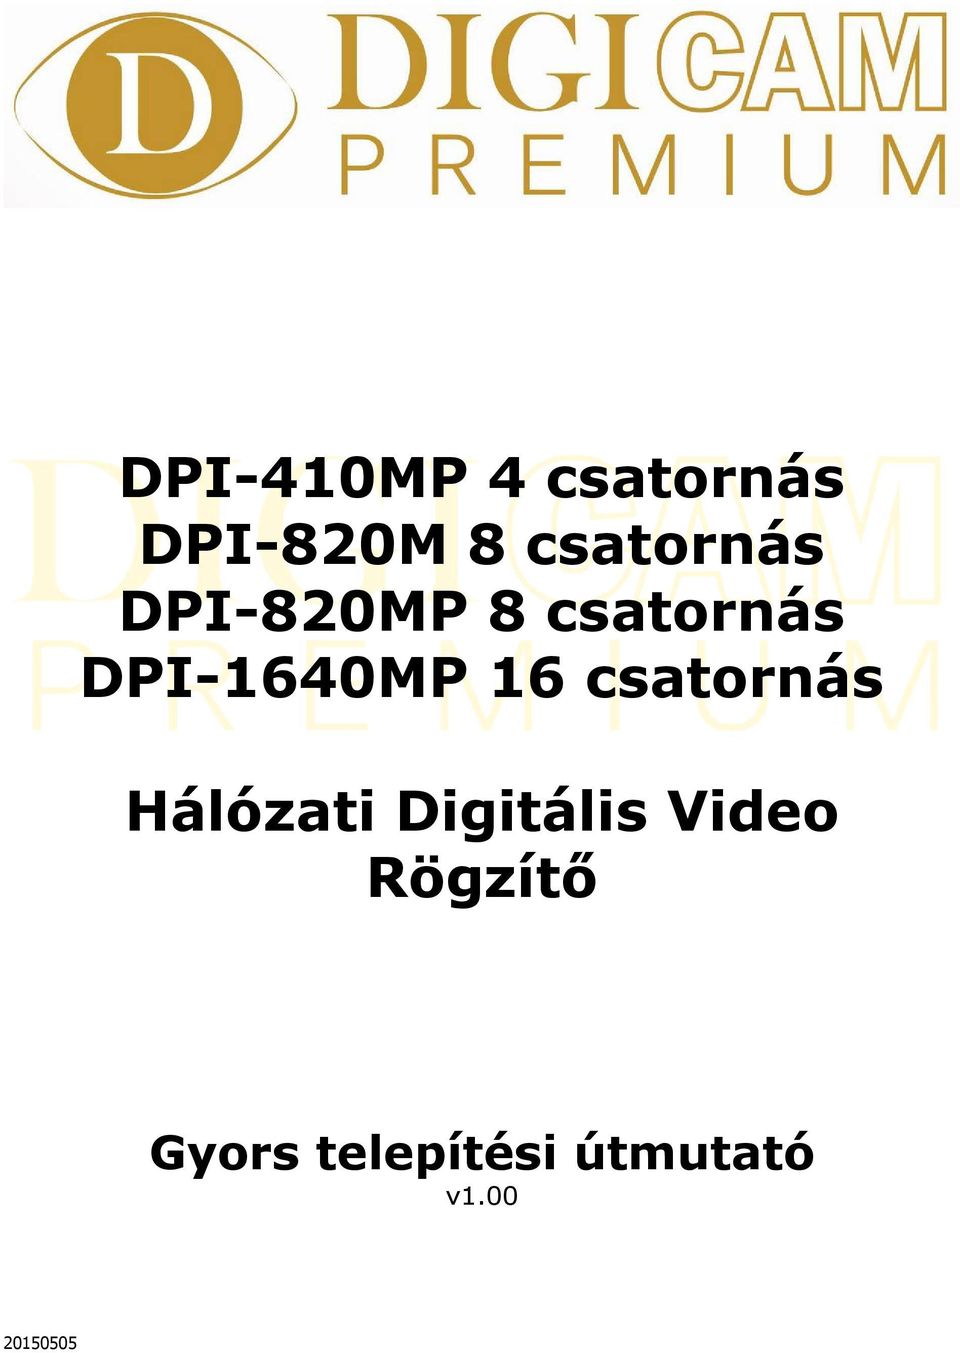 DPI-1640MP 16 csatornás Hálózati